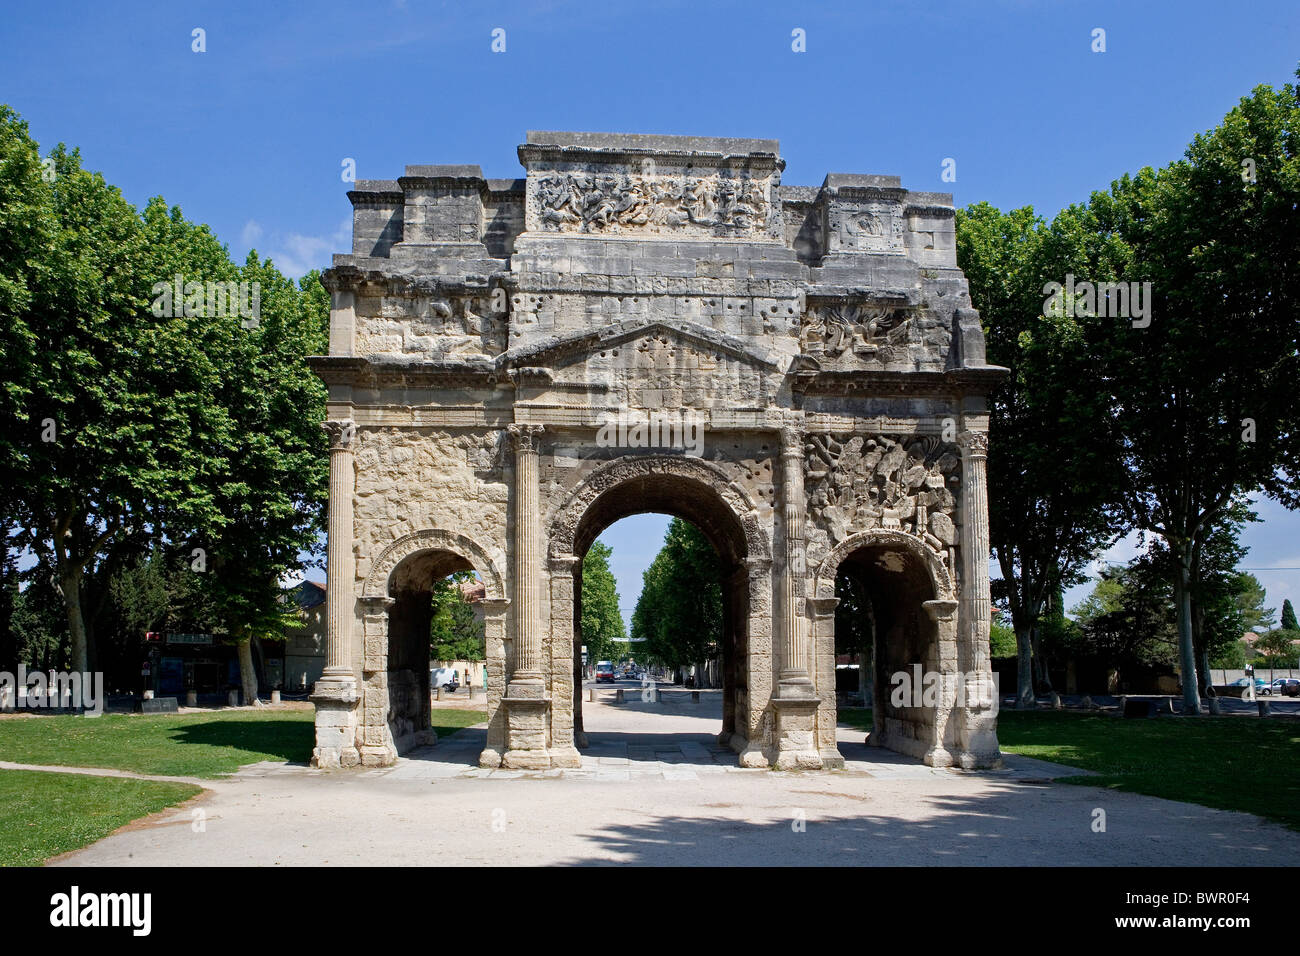 France Europe Ville Orange Arc de Triomphe arc de triomphe du patrimoine mondial de l'architecture romains anci Banque D'Images